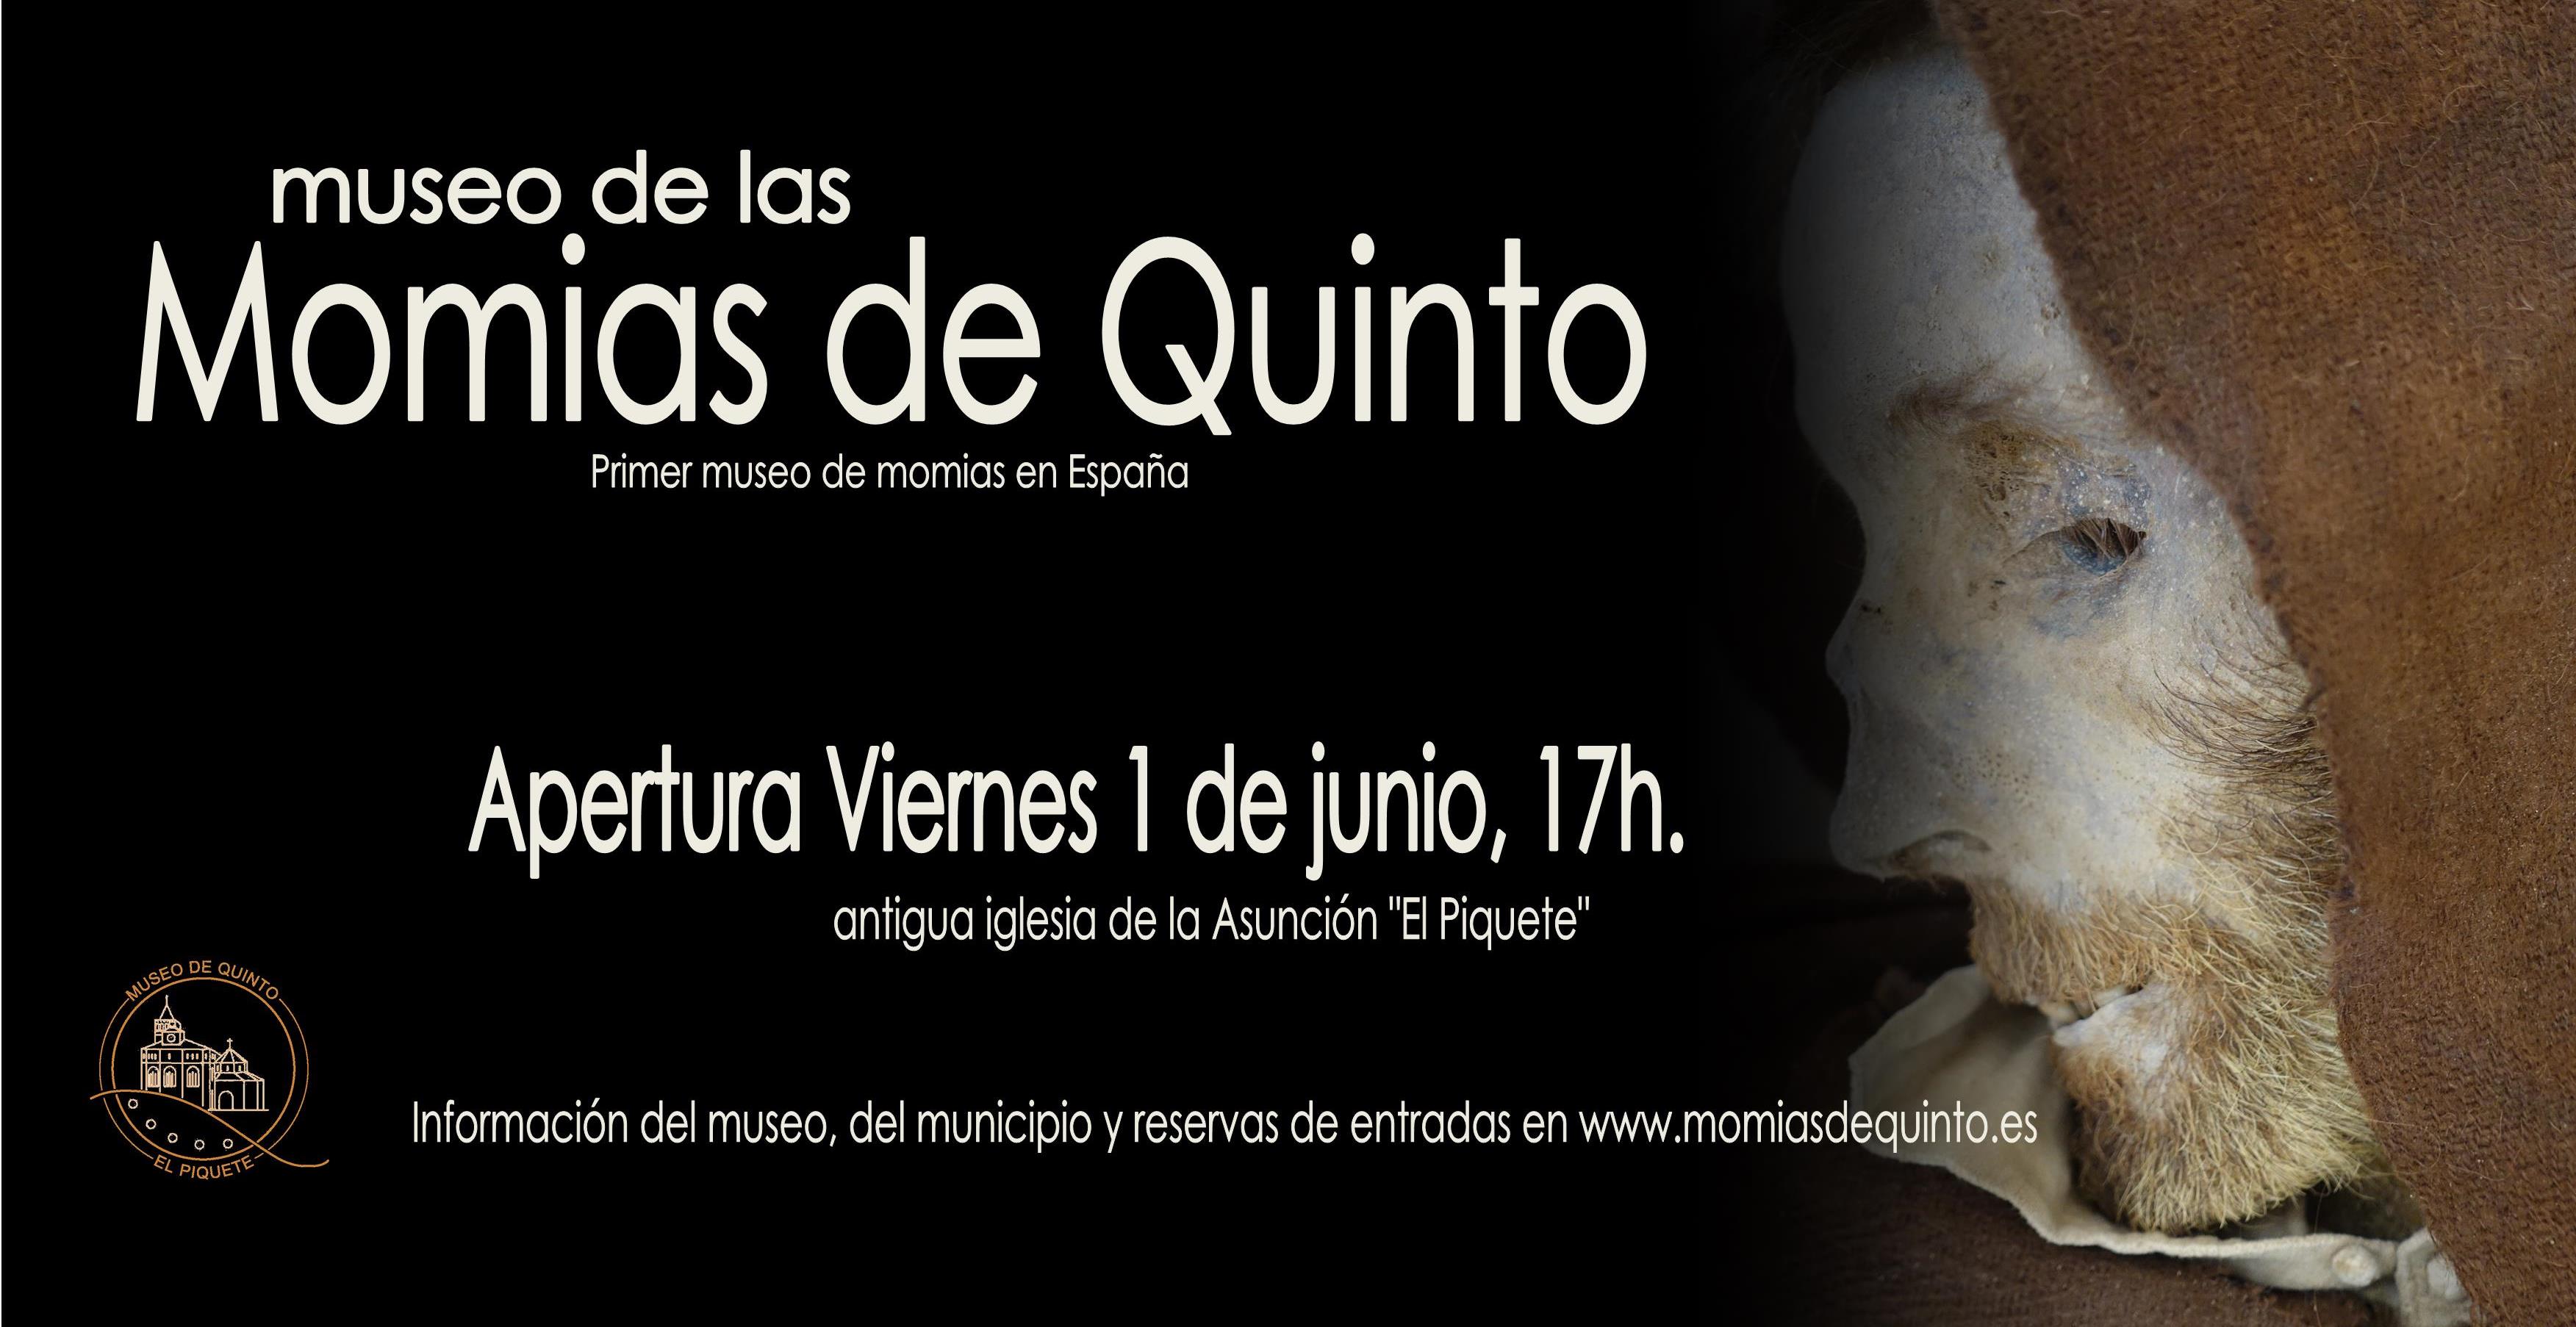 El museo de las Momias de Quinto abre el 1 de junio